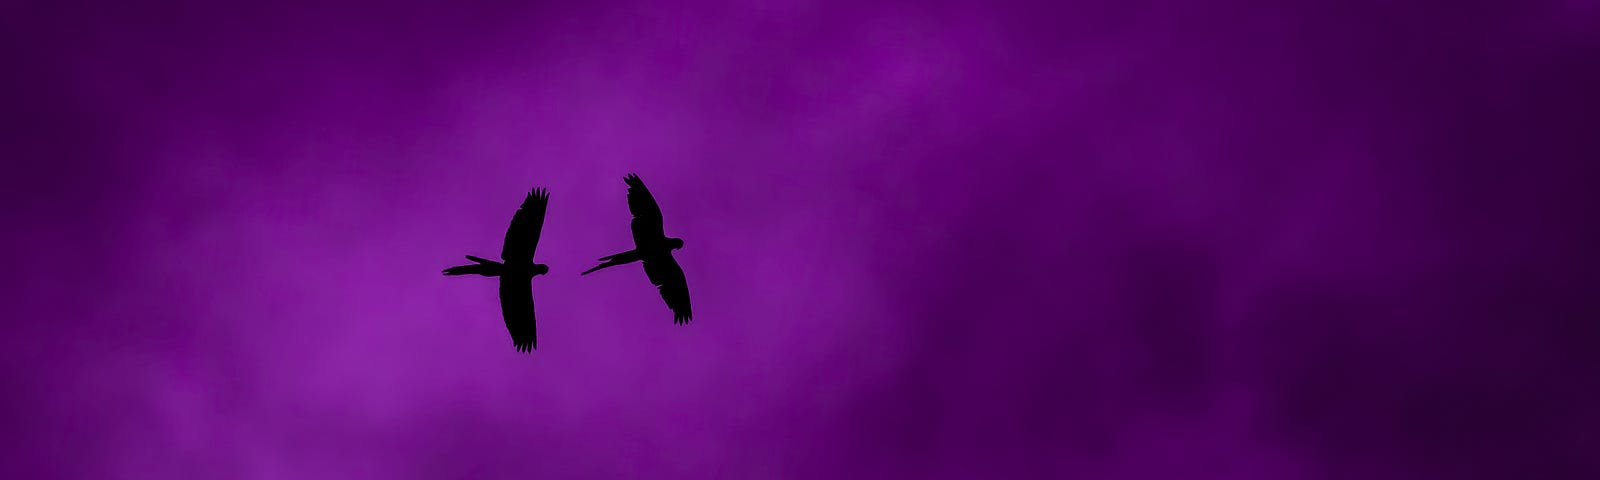 silohette of two raptors in flight against purple clouds